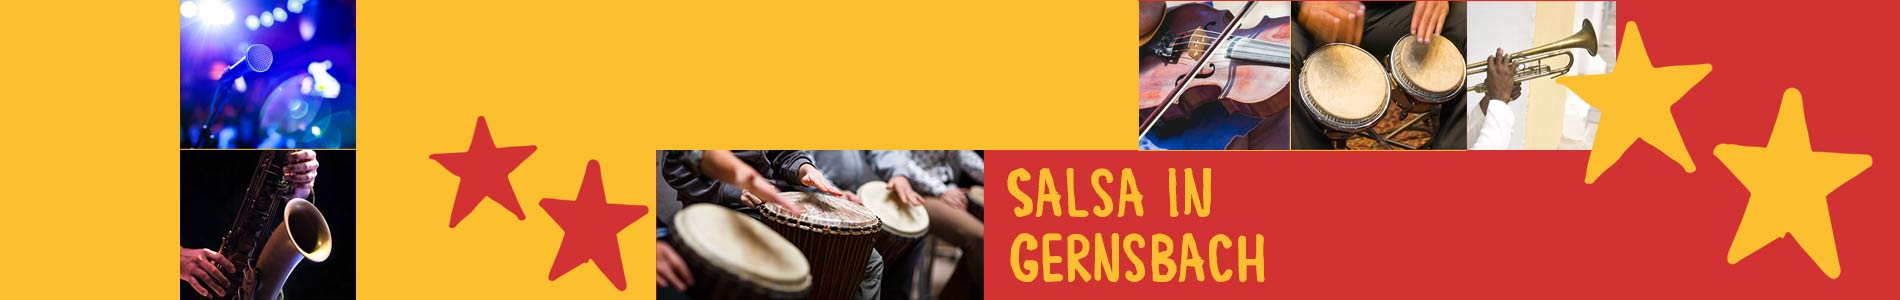 Salsa in Gernsbach – Salsa lernen und tanzen, Tanzkurse, Partys, Veranstaltungen